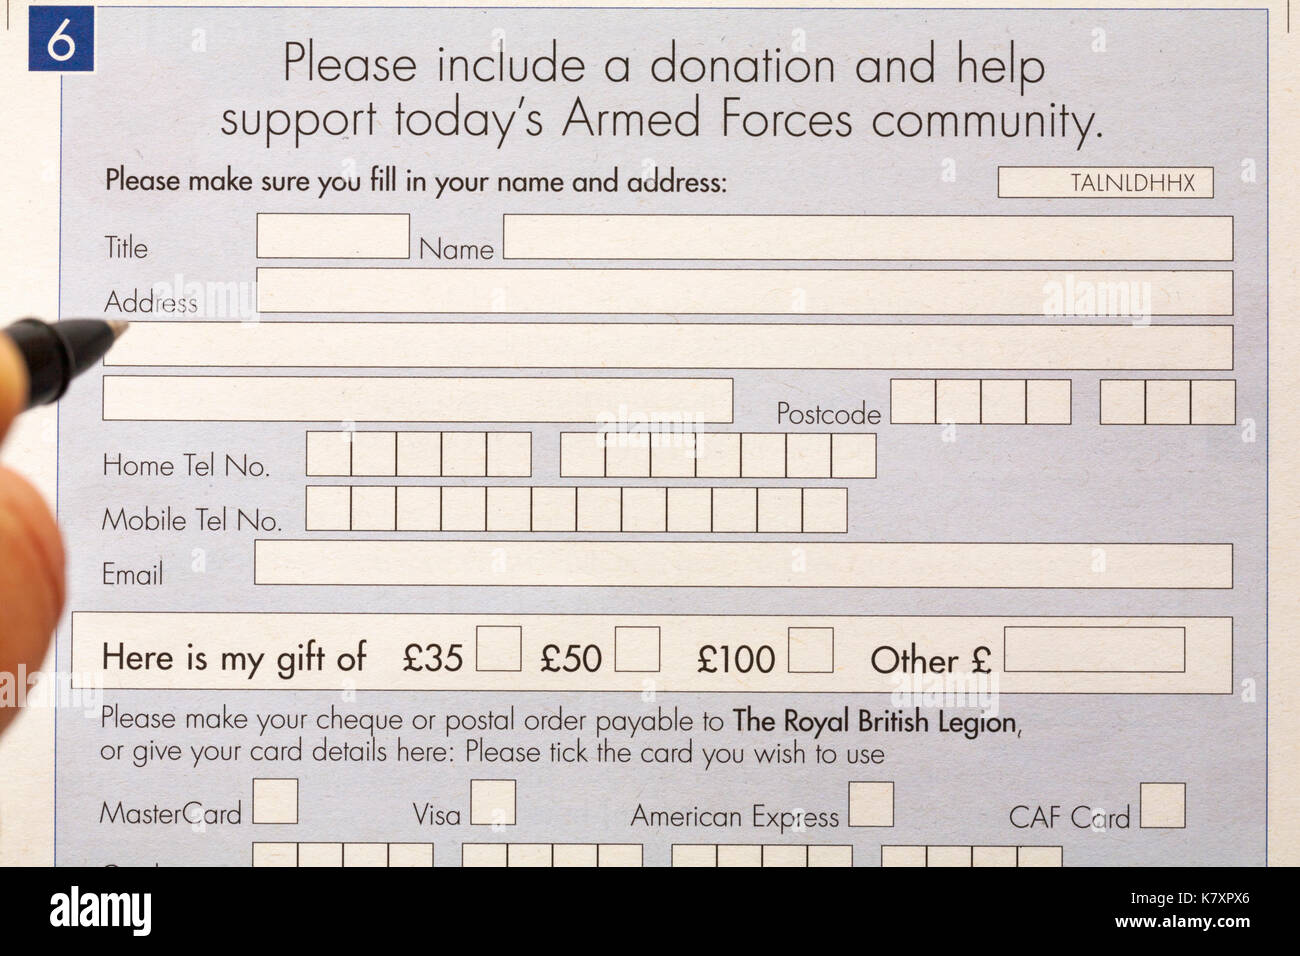 Veuillez inclure un don et aider à soutenir les forces armées d'aujourd'hui, communauté - formulaire à remplir pour la Royal British Legion Banque D'Images